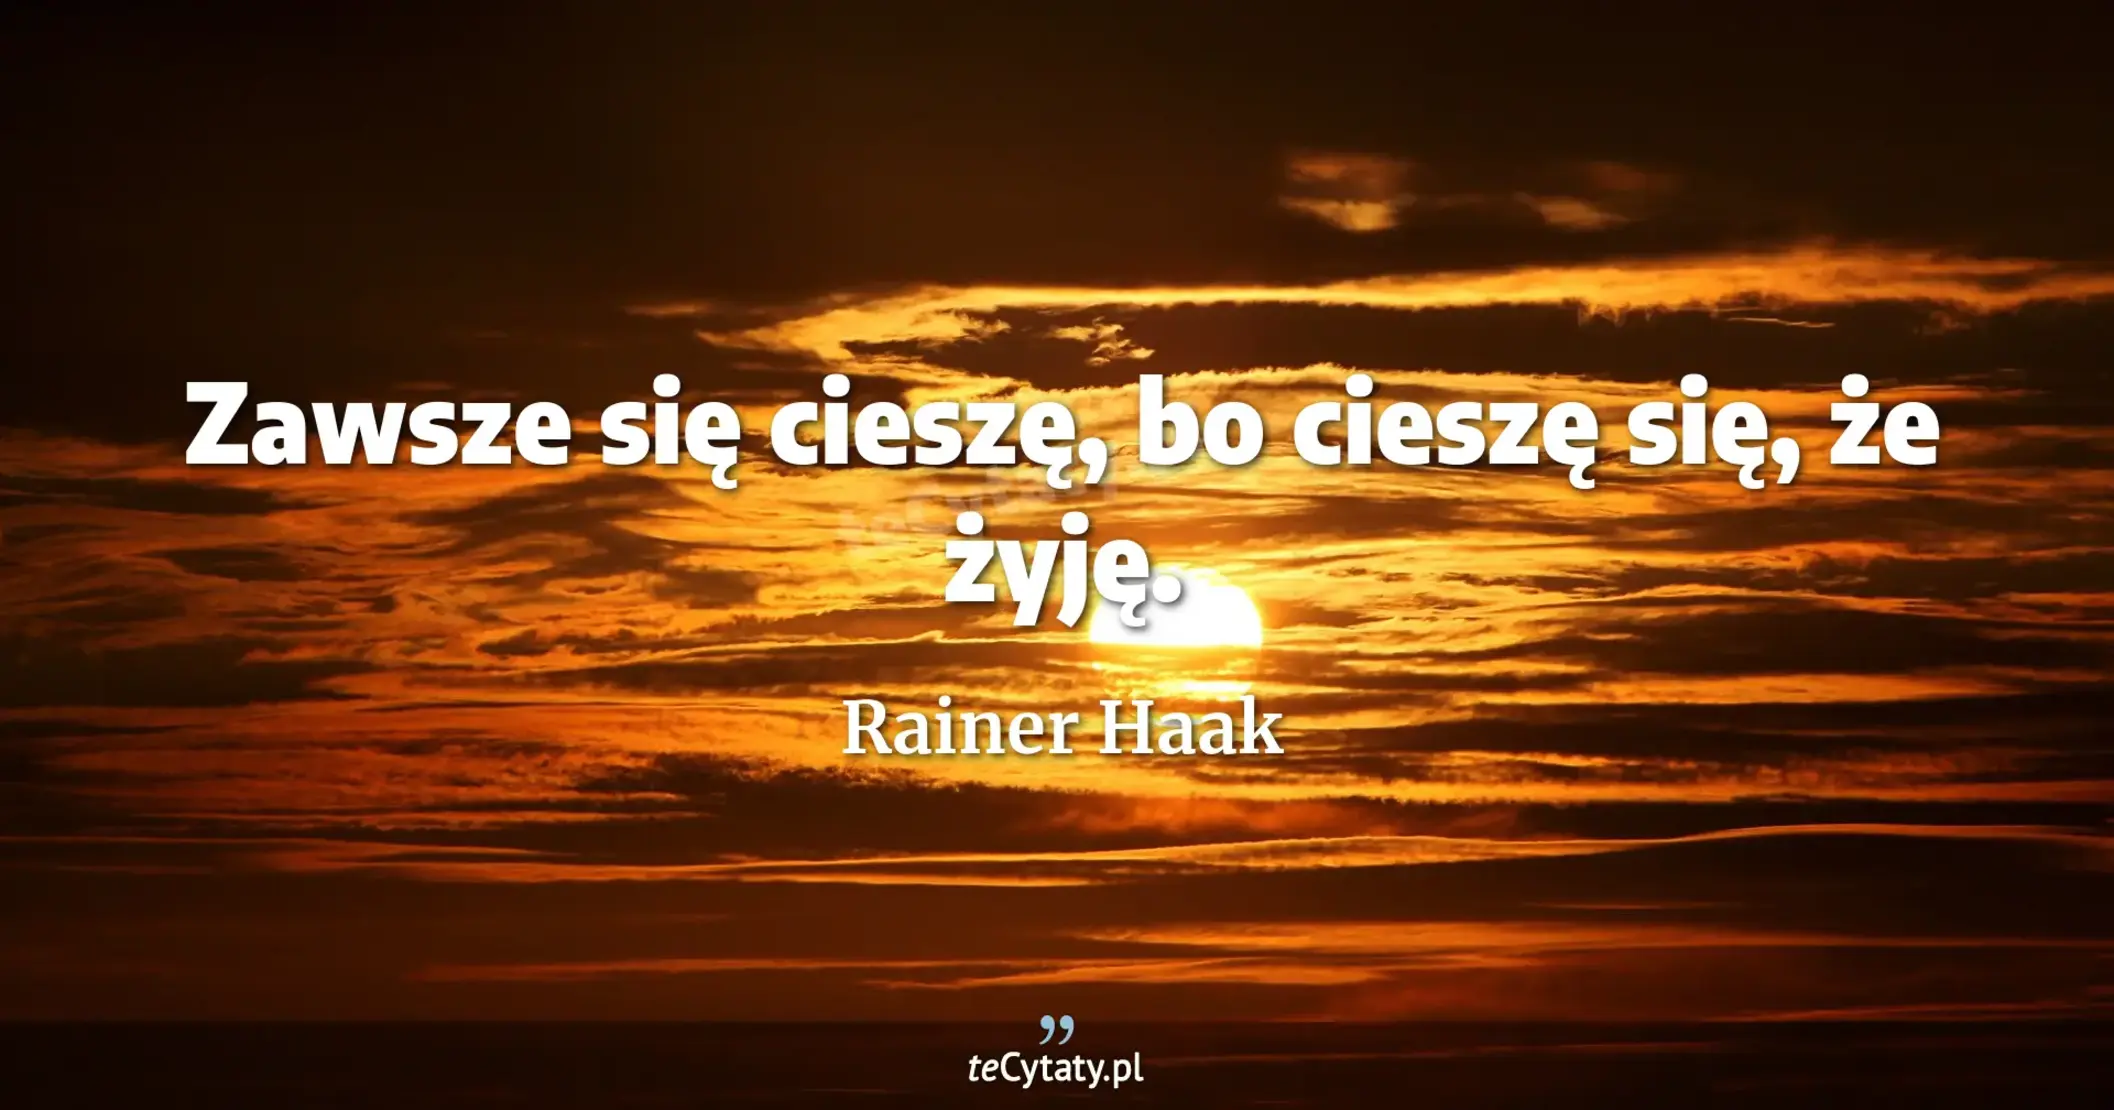 Zawsze się cieszę, bo cieszę się, że żyję. - Rainer Haak